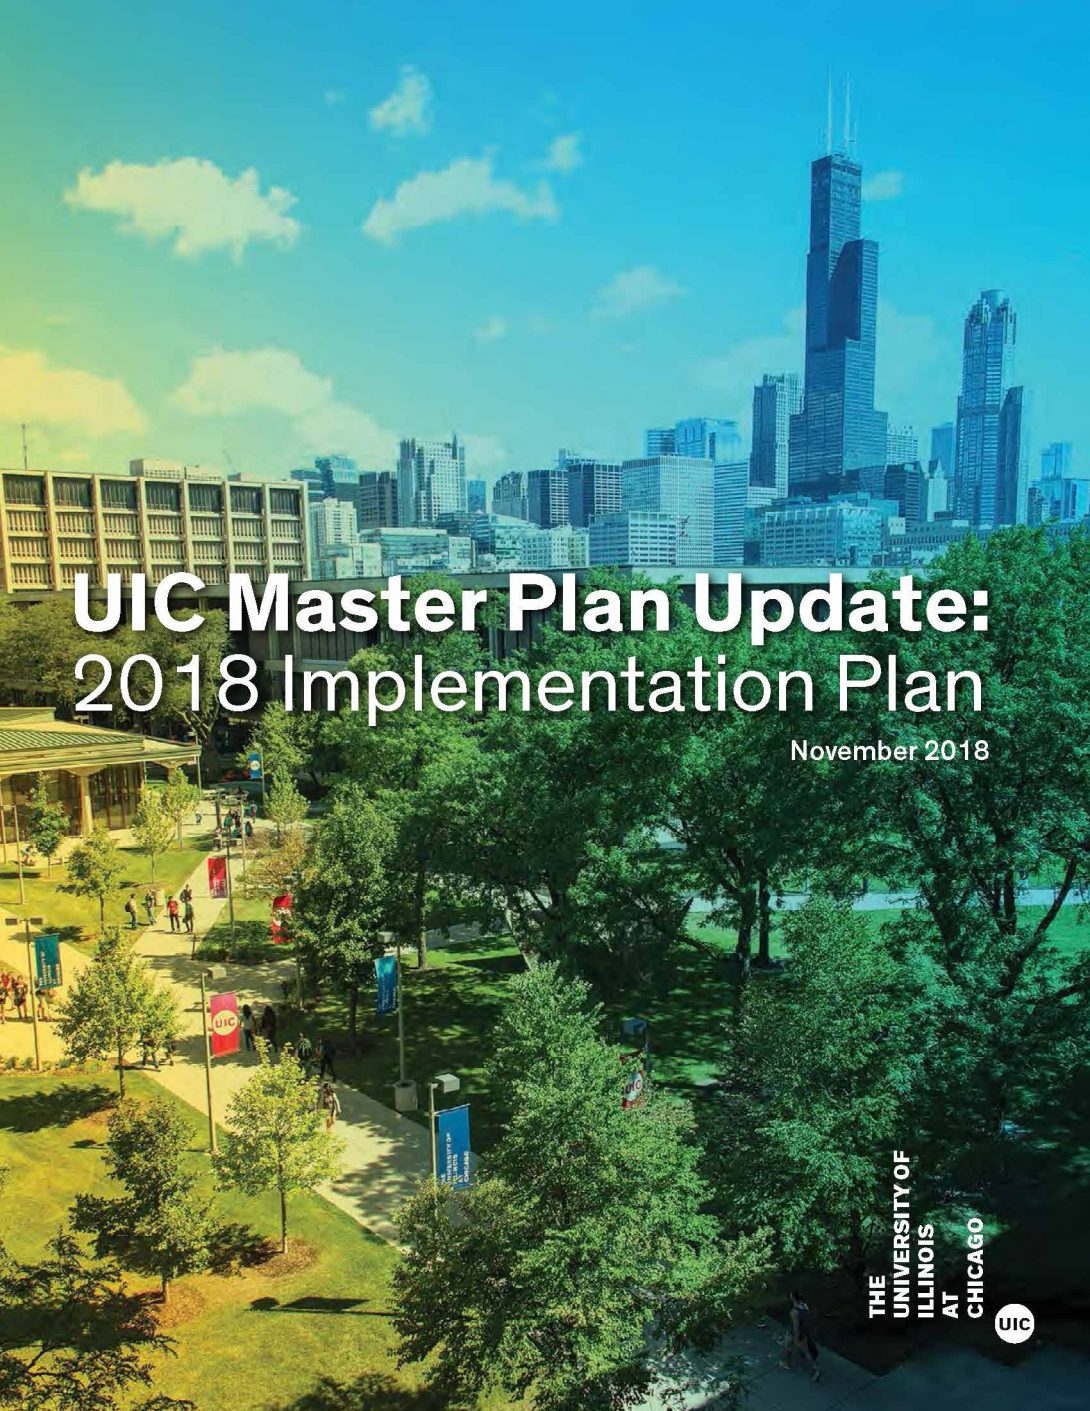 UIC Master Plan Update: 2018 Implementation Plan